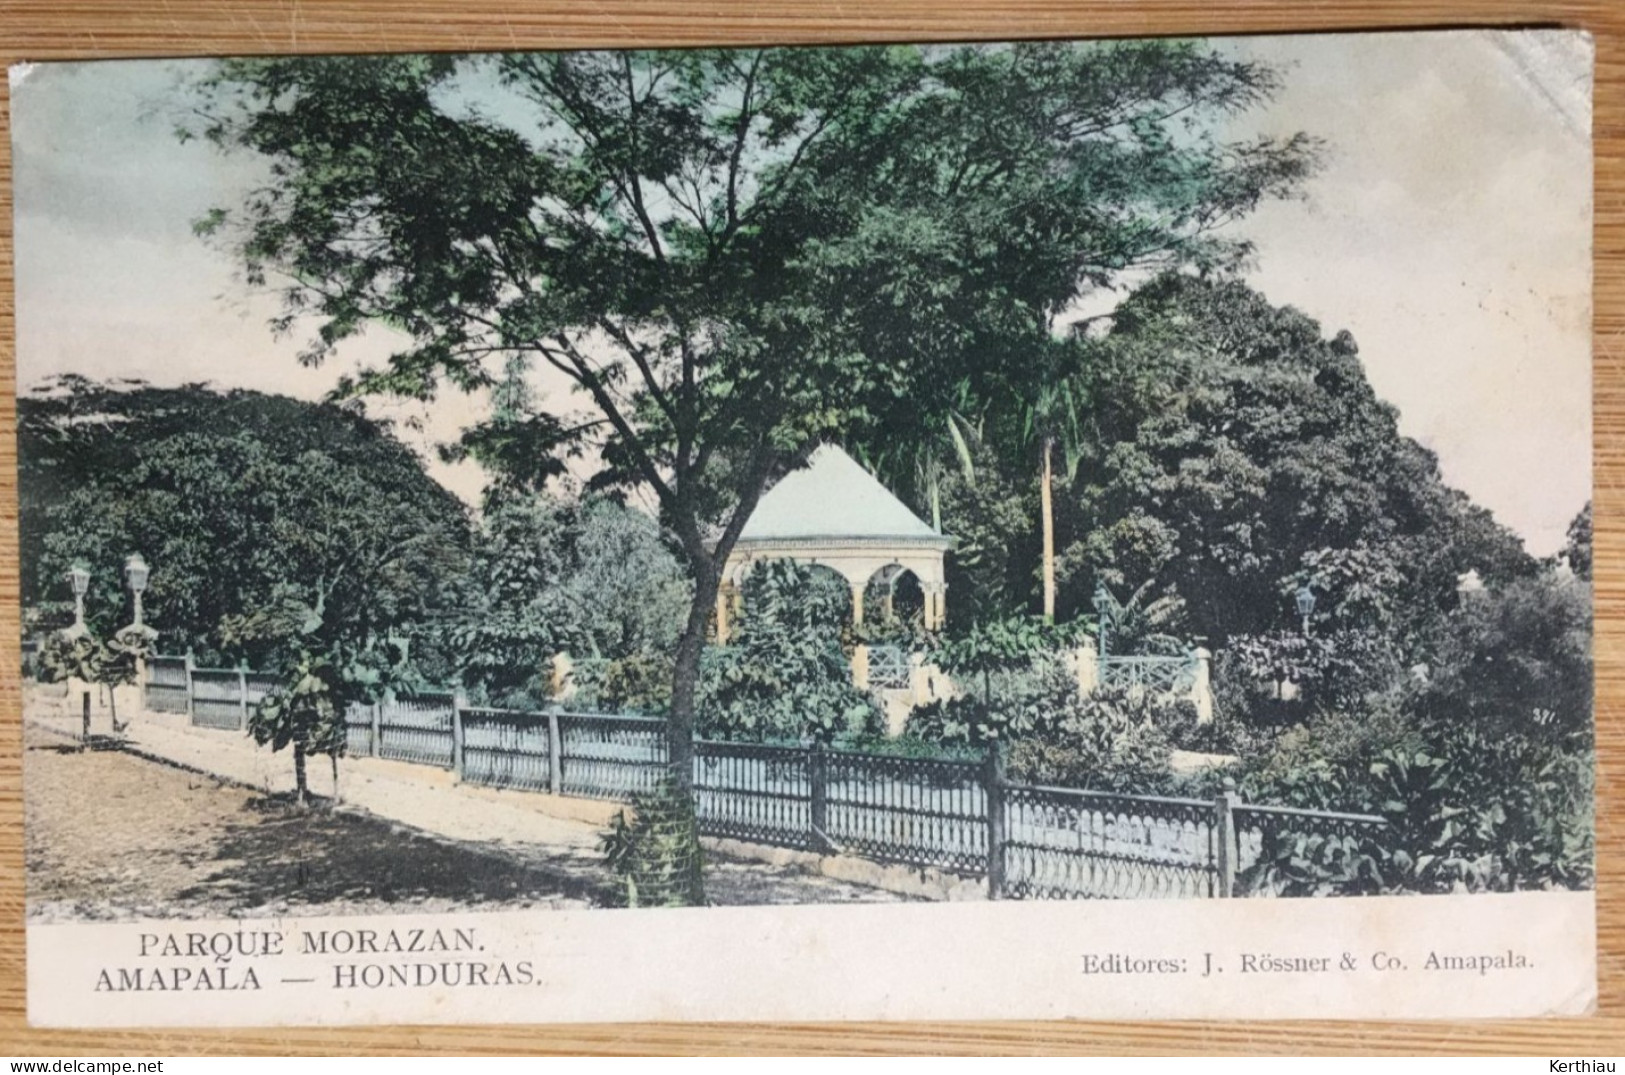 Honduras - AMAPALA - Parque Morazan - Publ. J. Rössner & Co. - Honduras